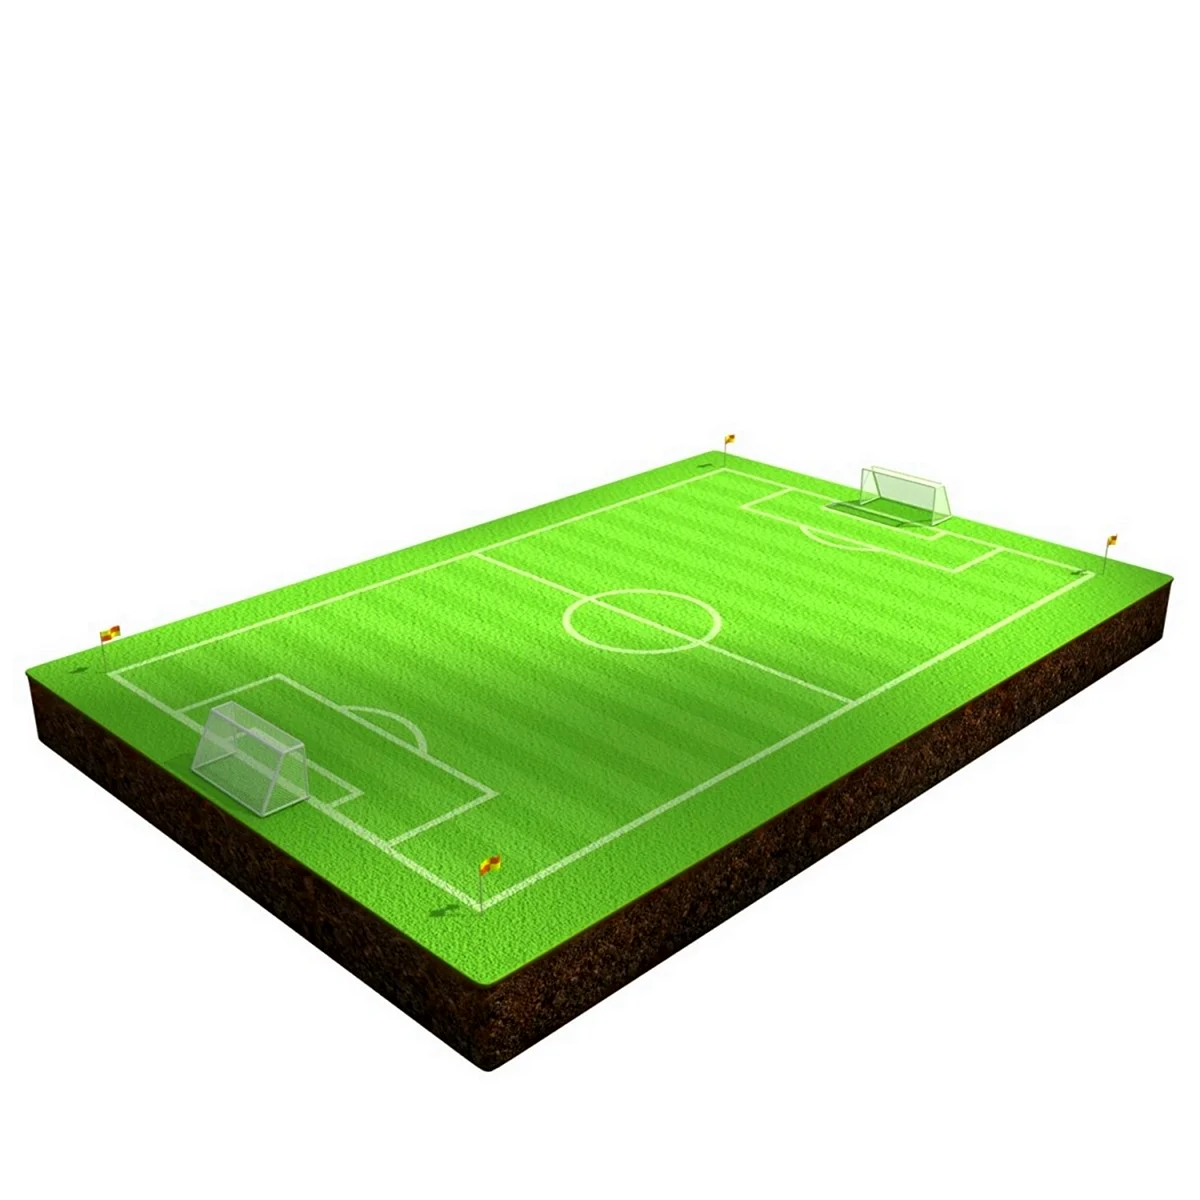 3 Д модель футбольного поля архикад